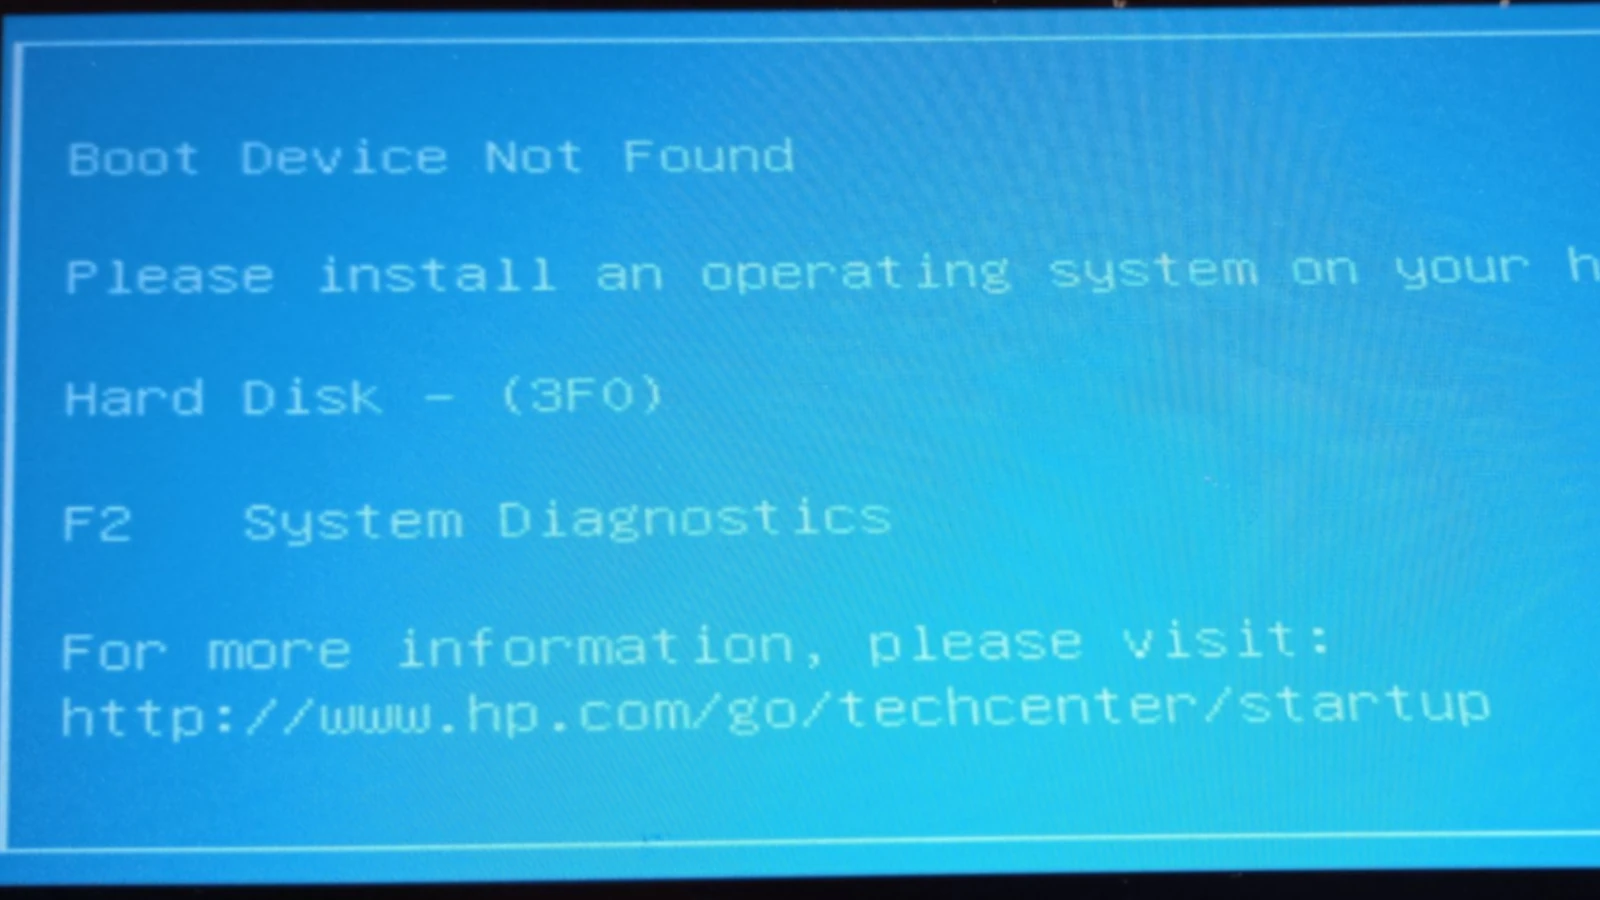 HP 3F0 Hard Disk Error